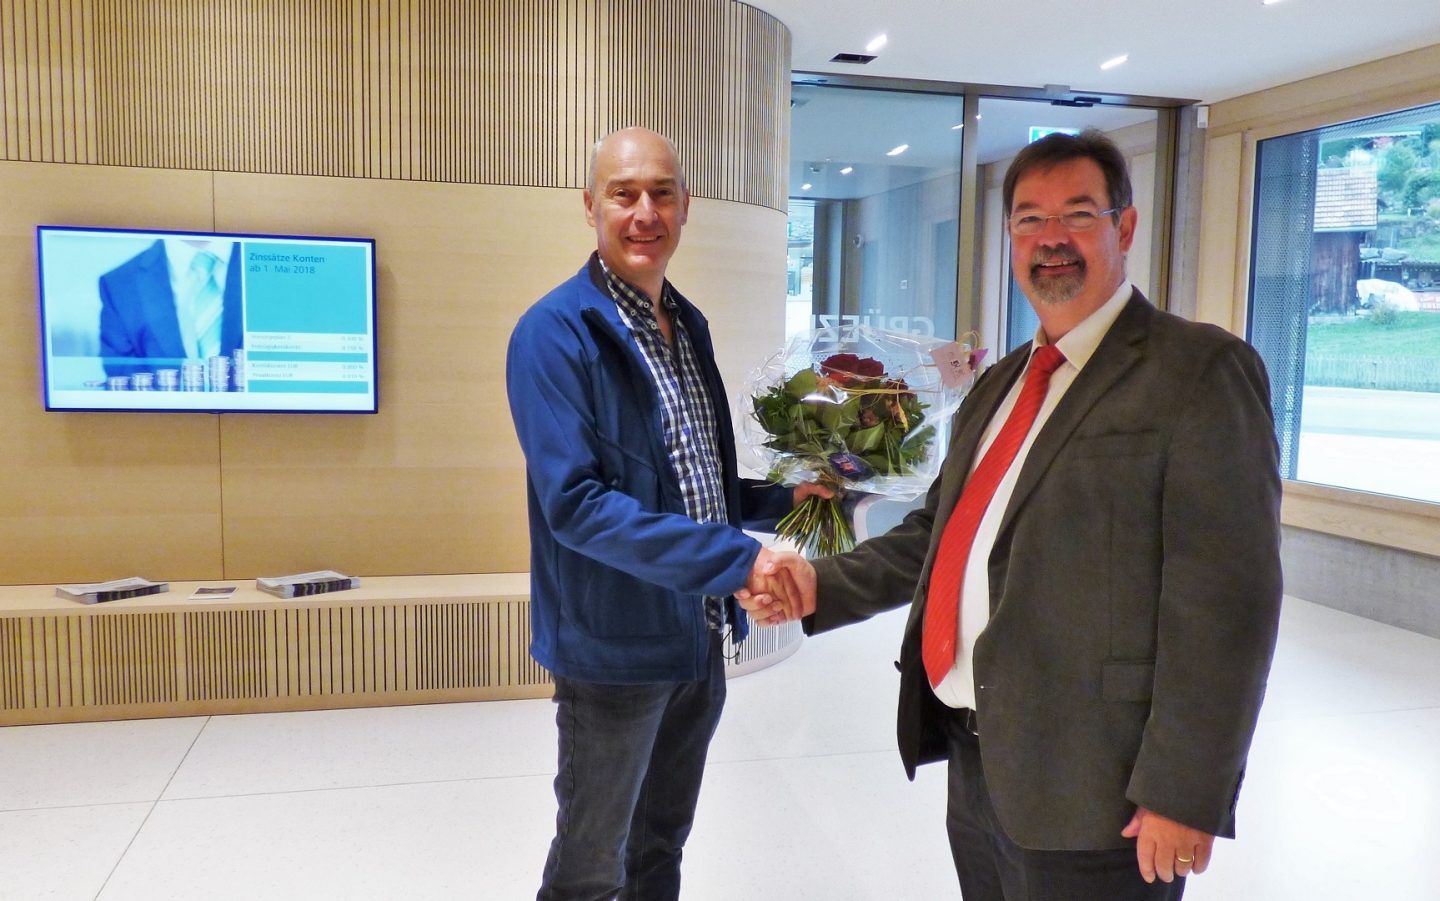 Ernst Zwingli übergibt dem ersten Kunden einen Blumenstrauss